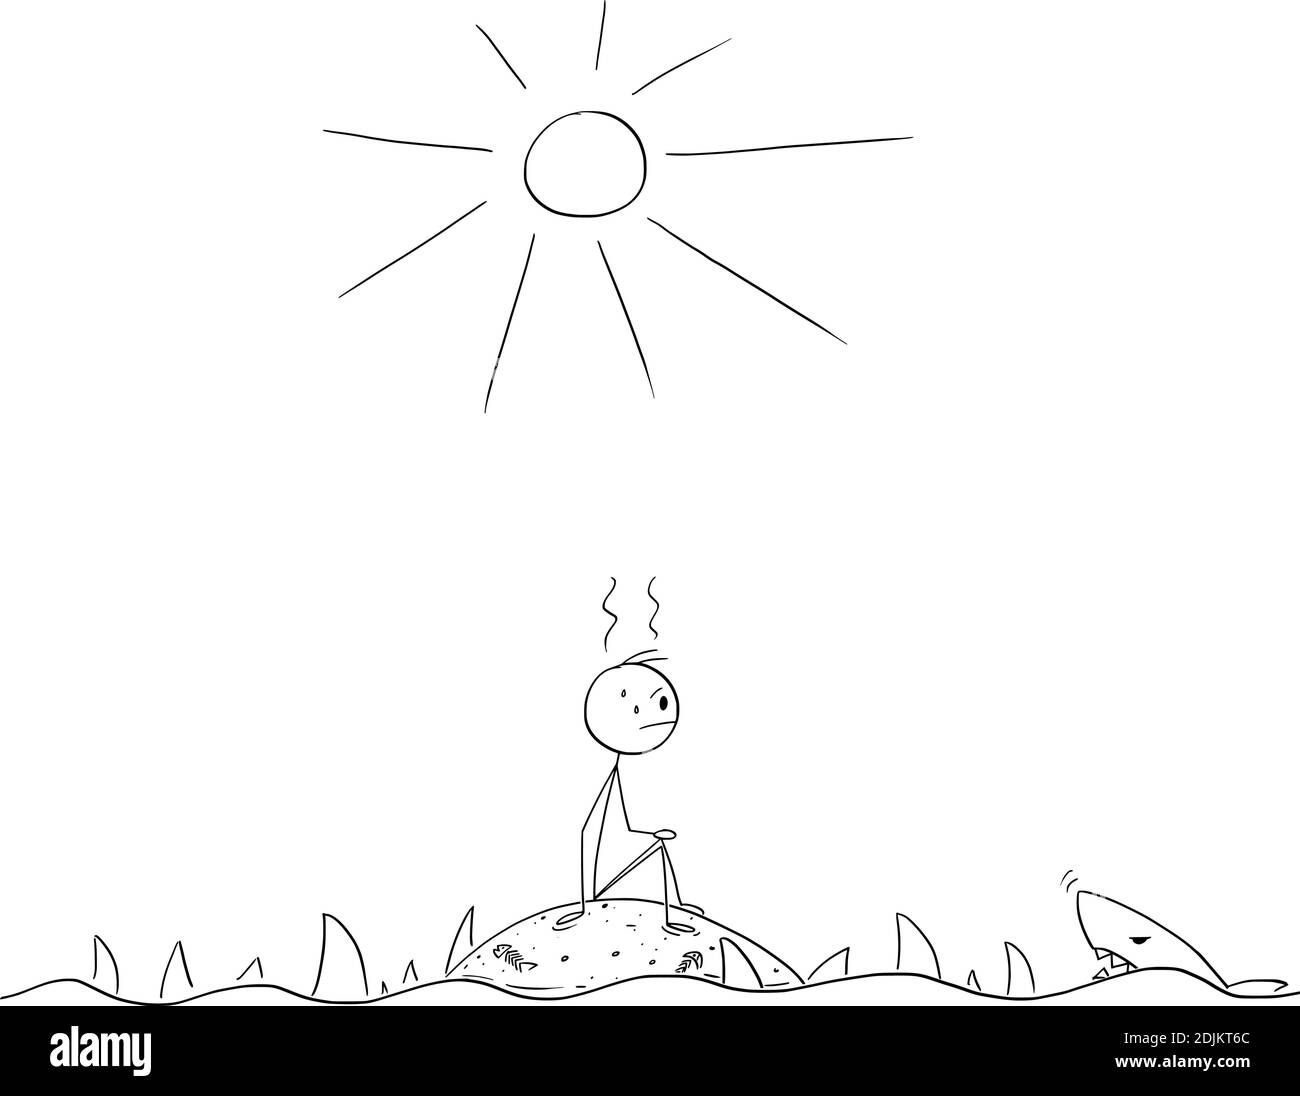 Illustration d'un personnage de dessin animé vectoriel représentant un homme frustré assis seul sur une petite île déserte et vide entourée de requins. Illustration de Vecteur